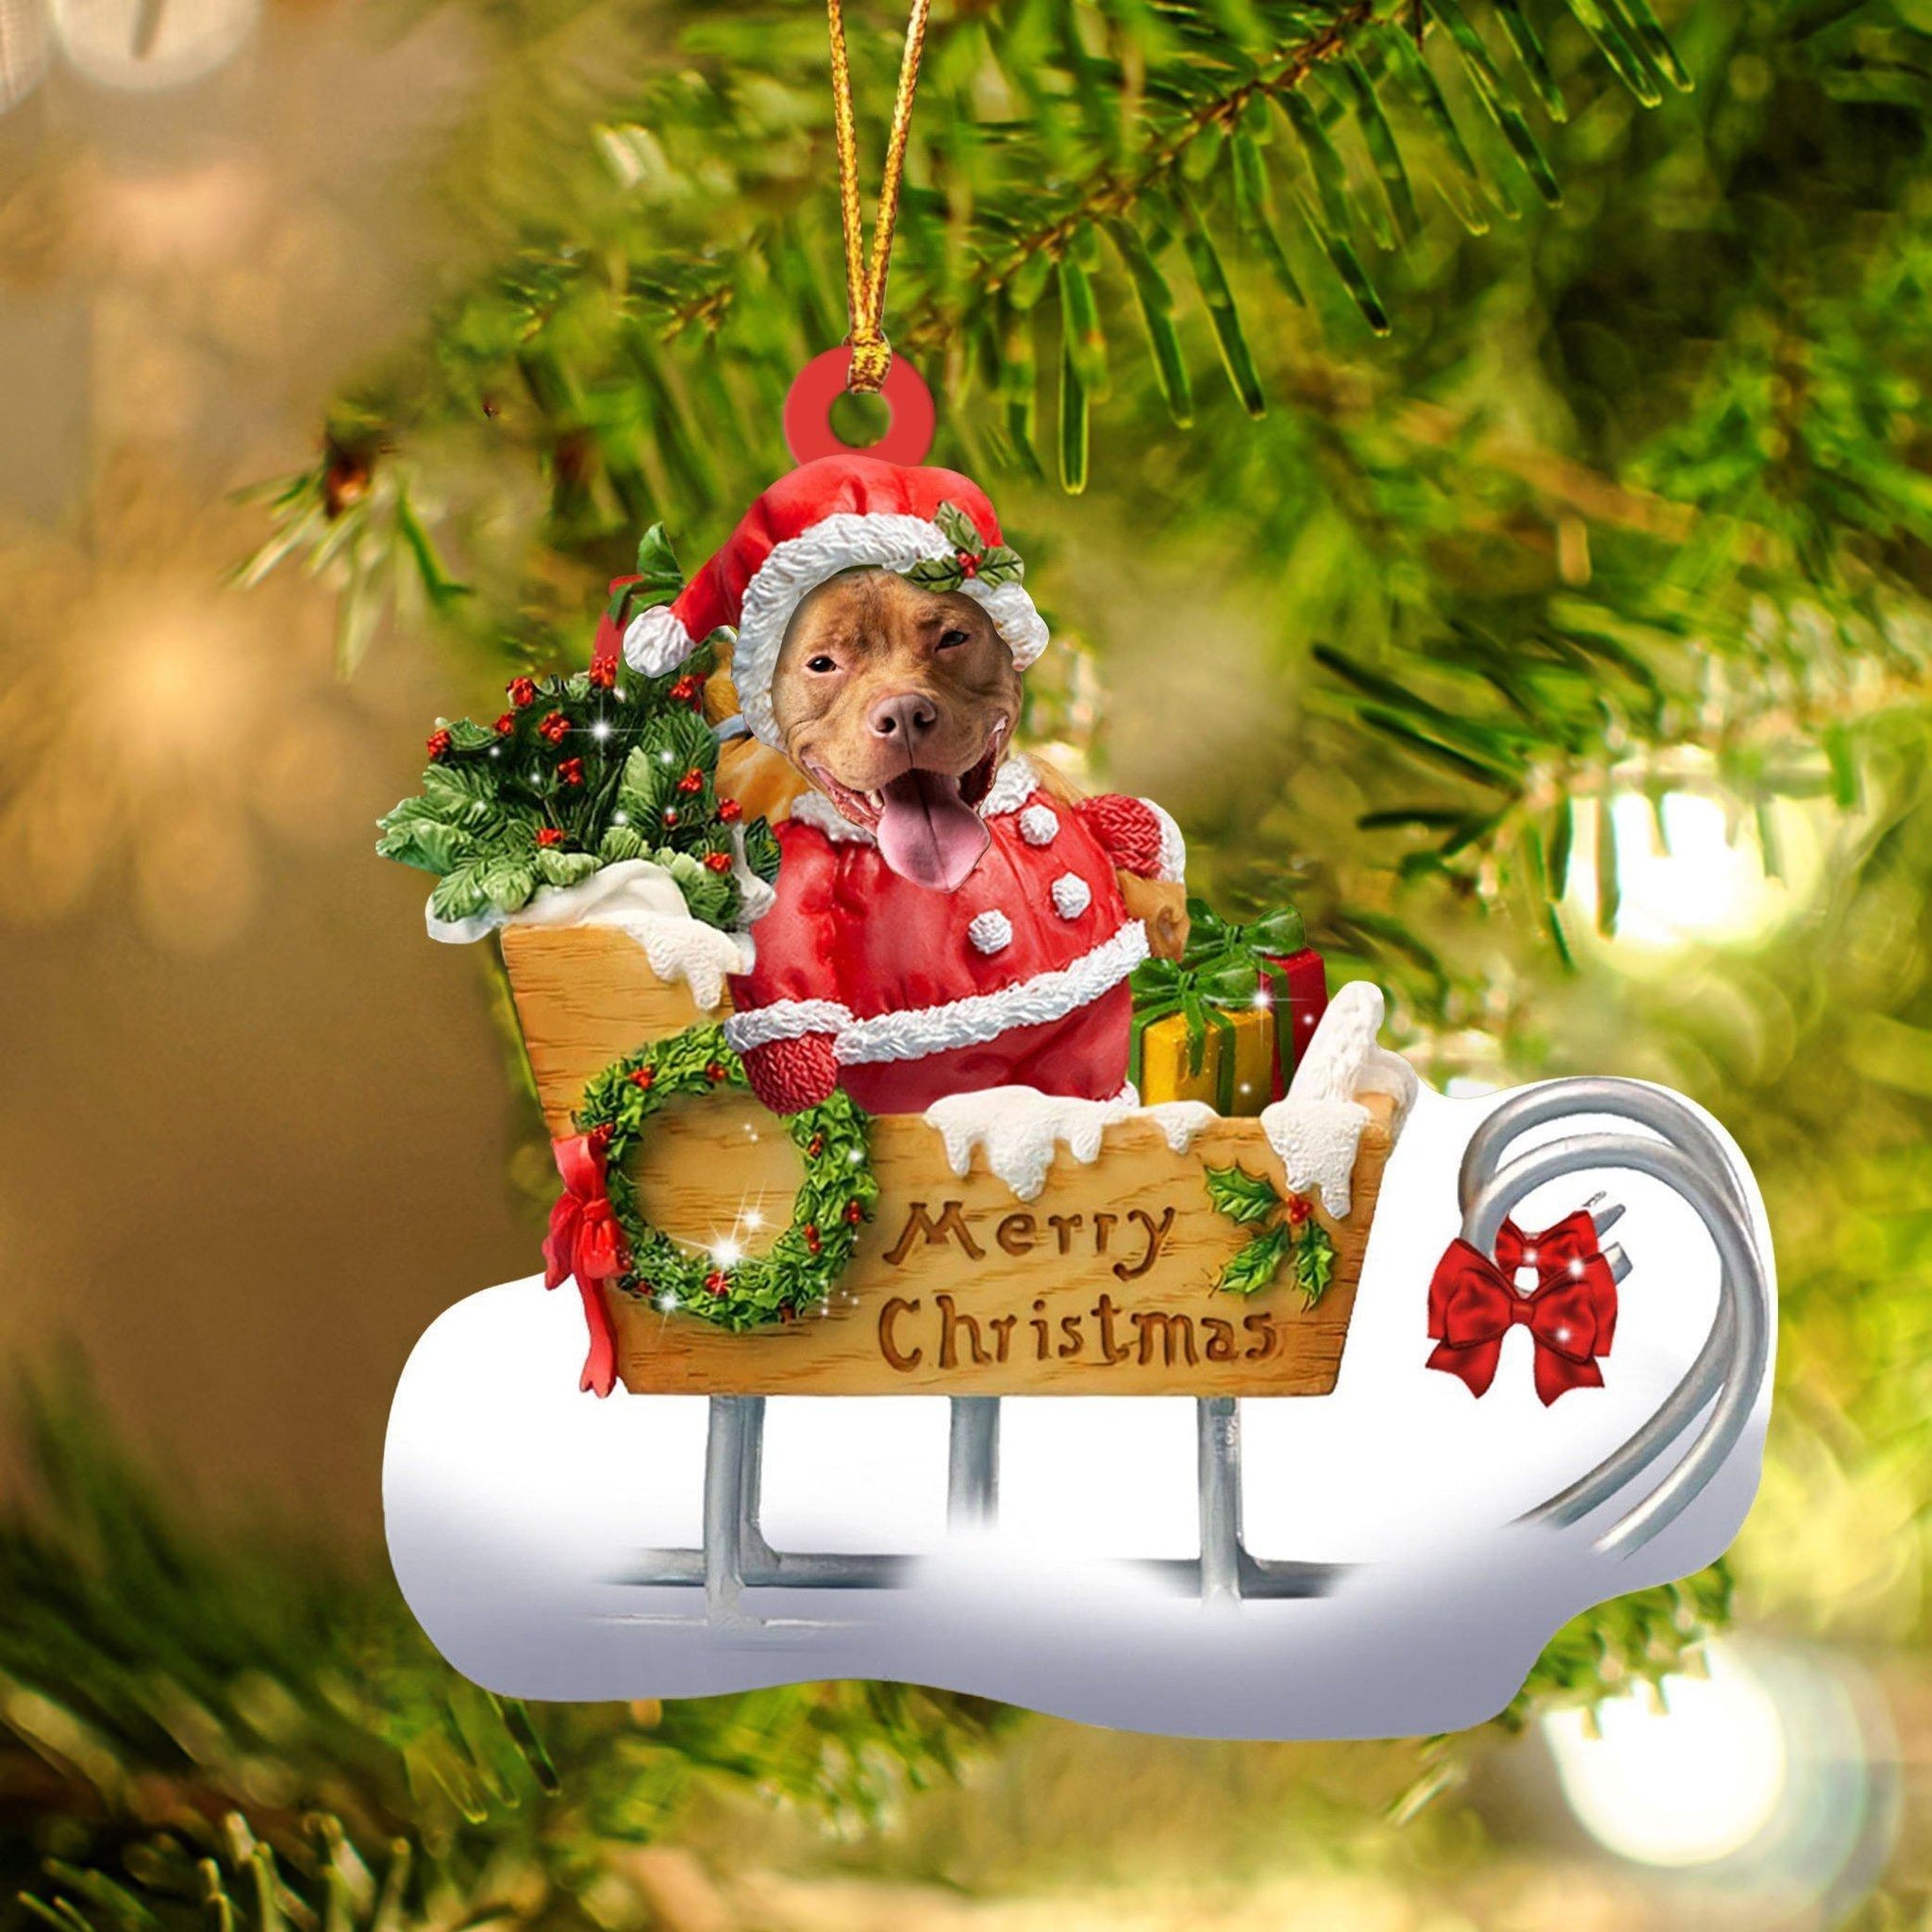 Pitbull Merry Christmas Ornament, Gift For Dog Lover